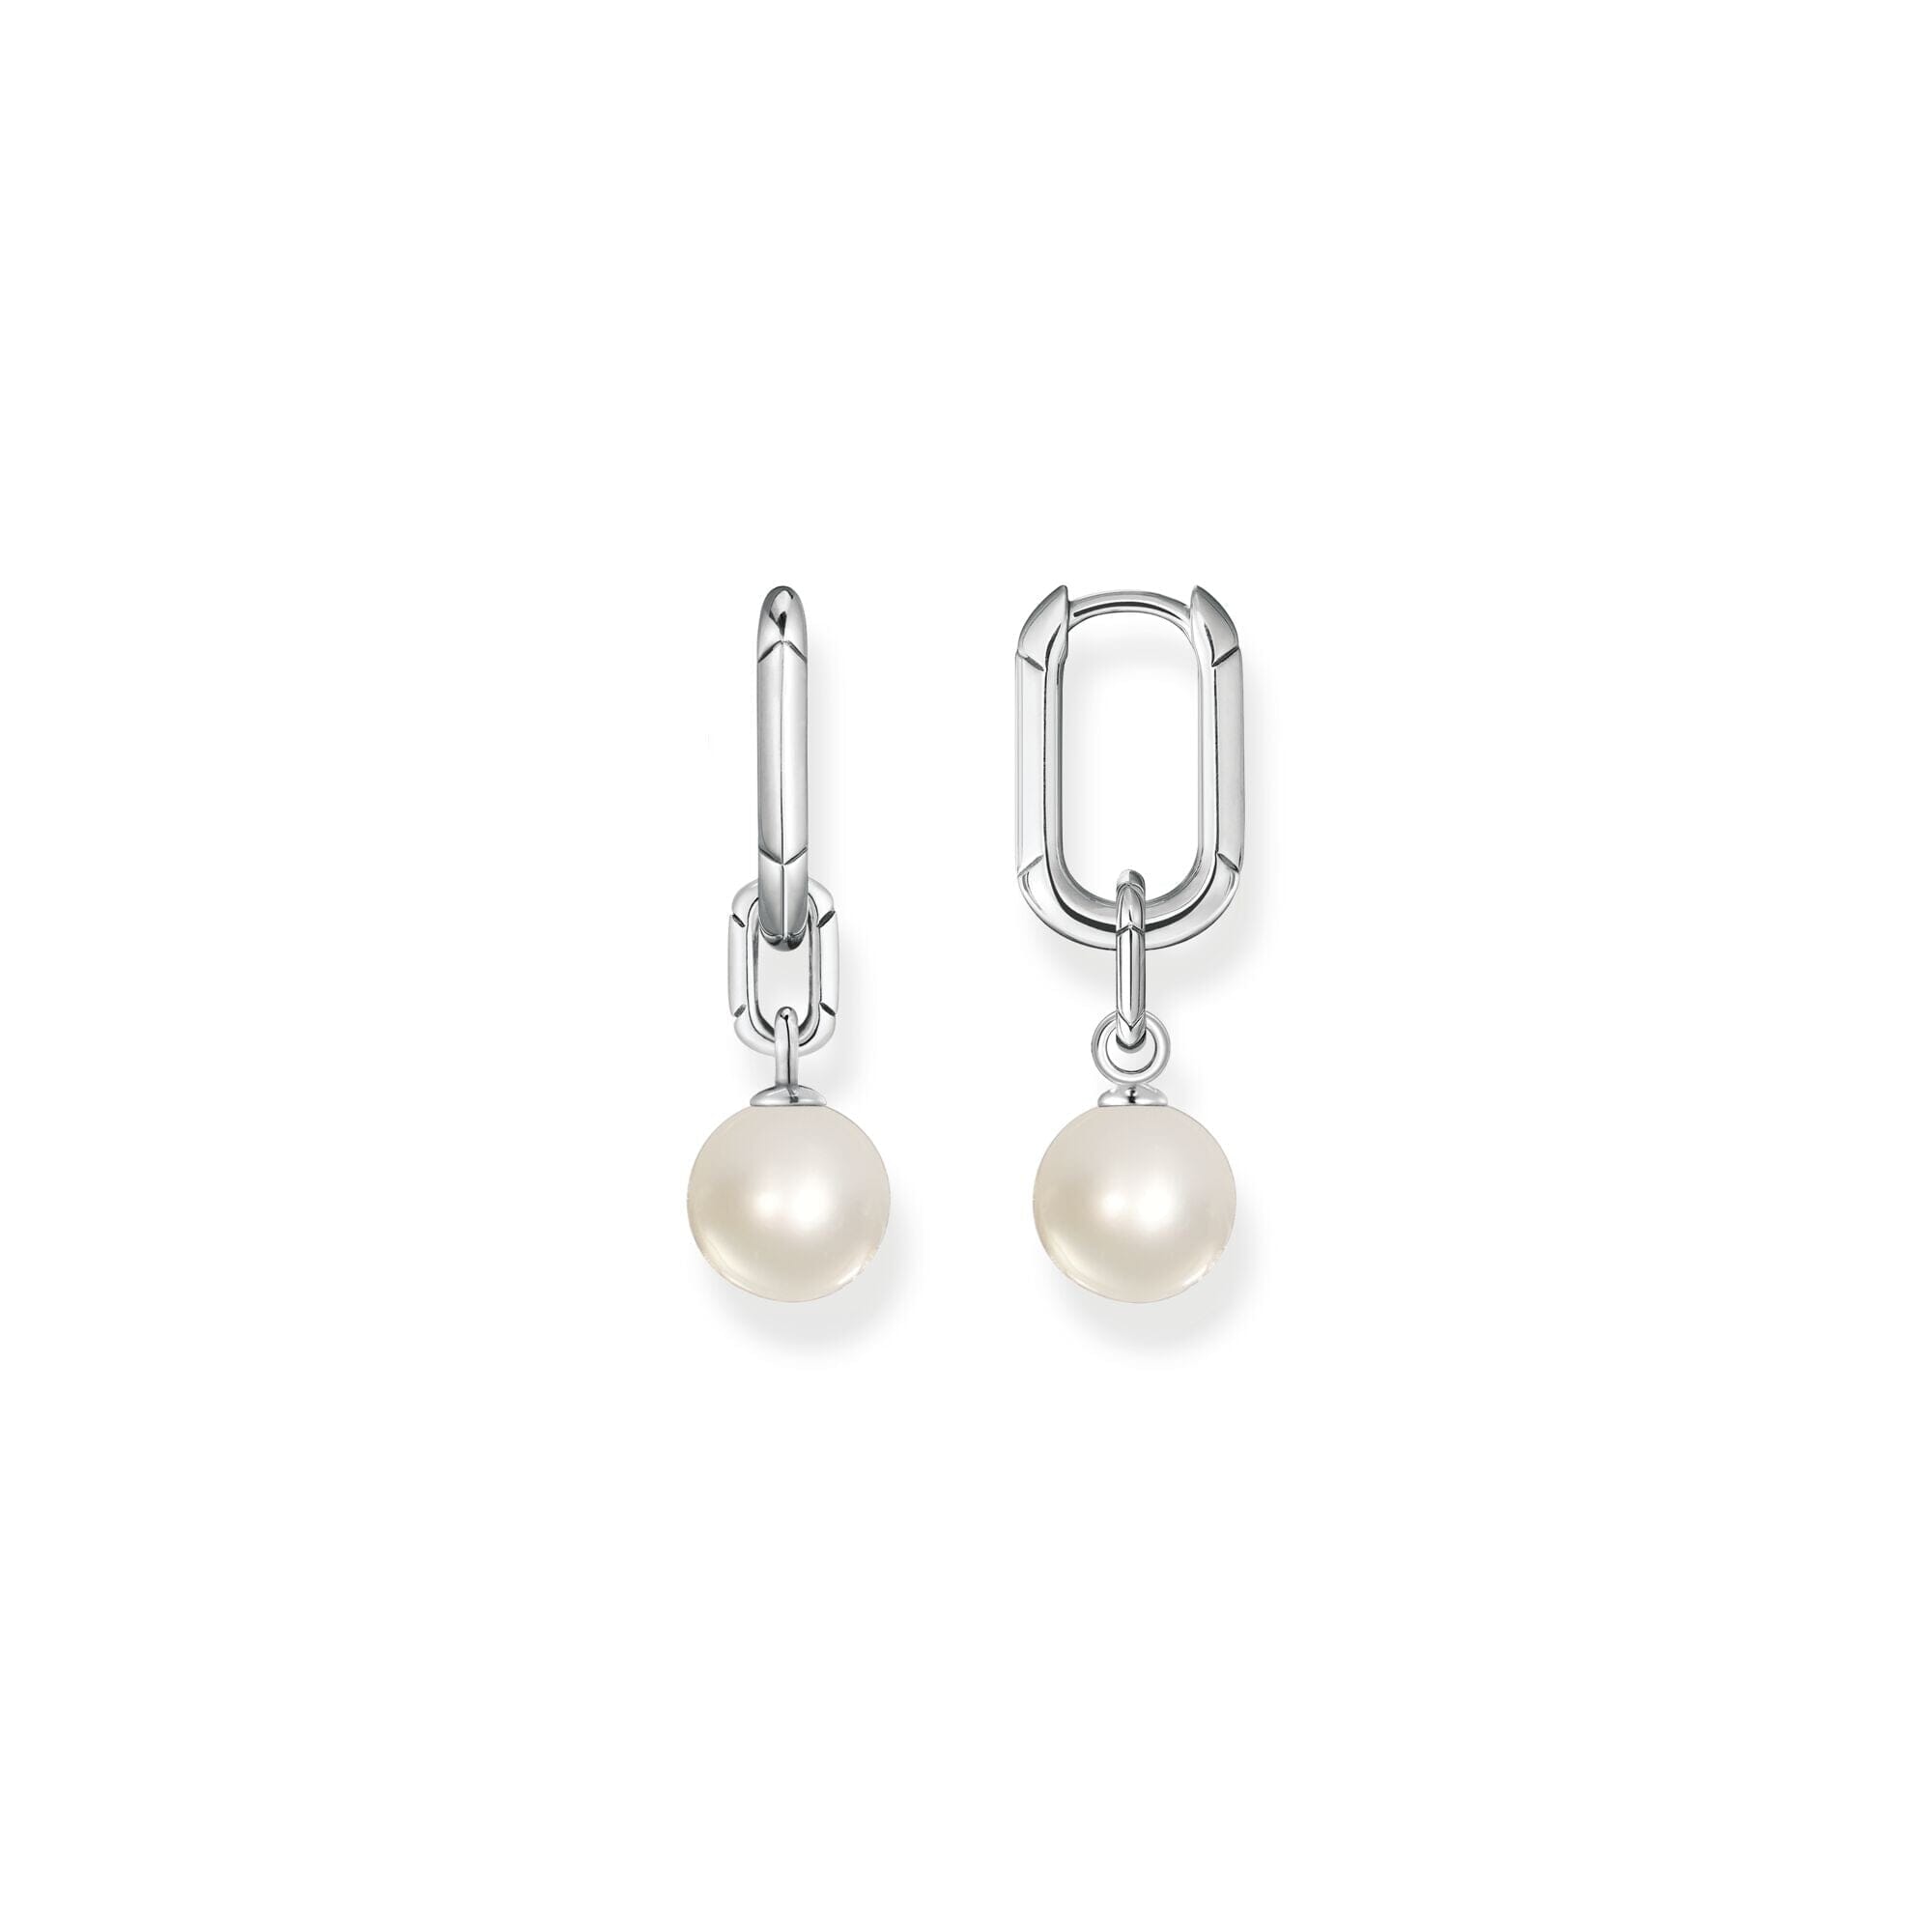 Thomas Sabo Hoop earrings links and pearls silver Earrings Thomas Sabo 